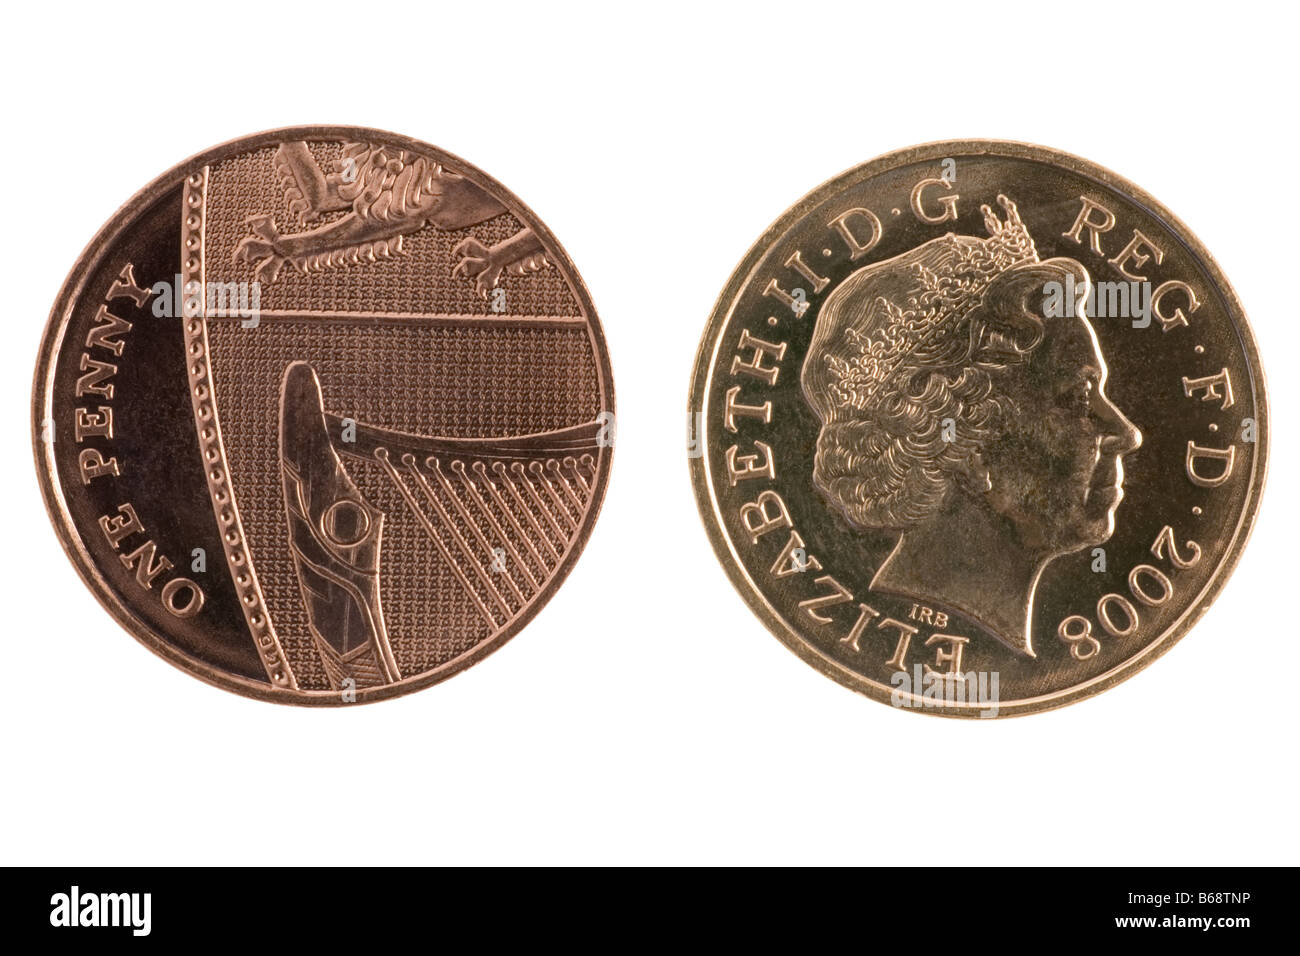 2008 Münzen neue Design für britische 1 Cent-Stück Stockfoto